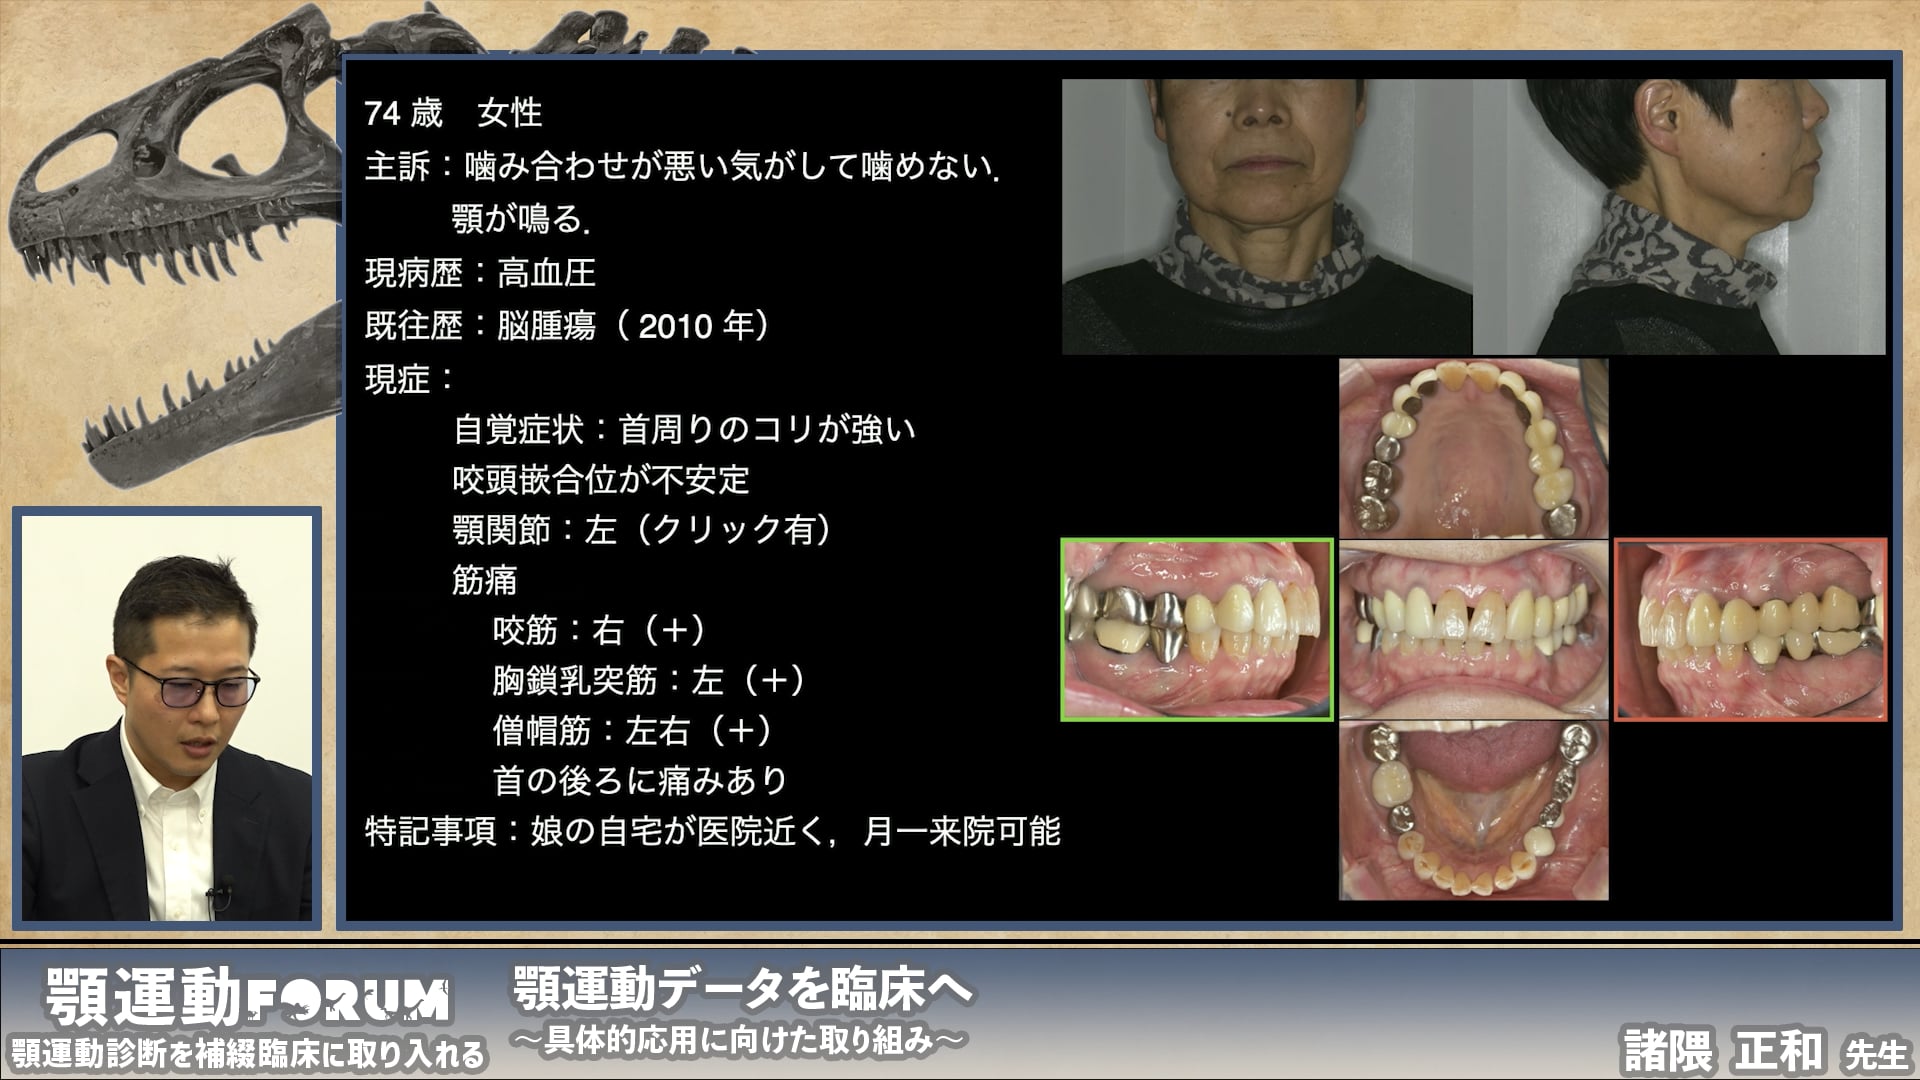 顎運動データを応用し咬合再構成を行った症例の解説〜実症例に学ぶ顎運動分析〜 #2